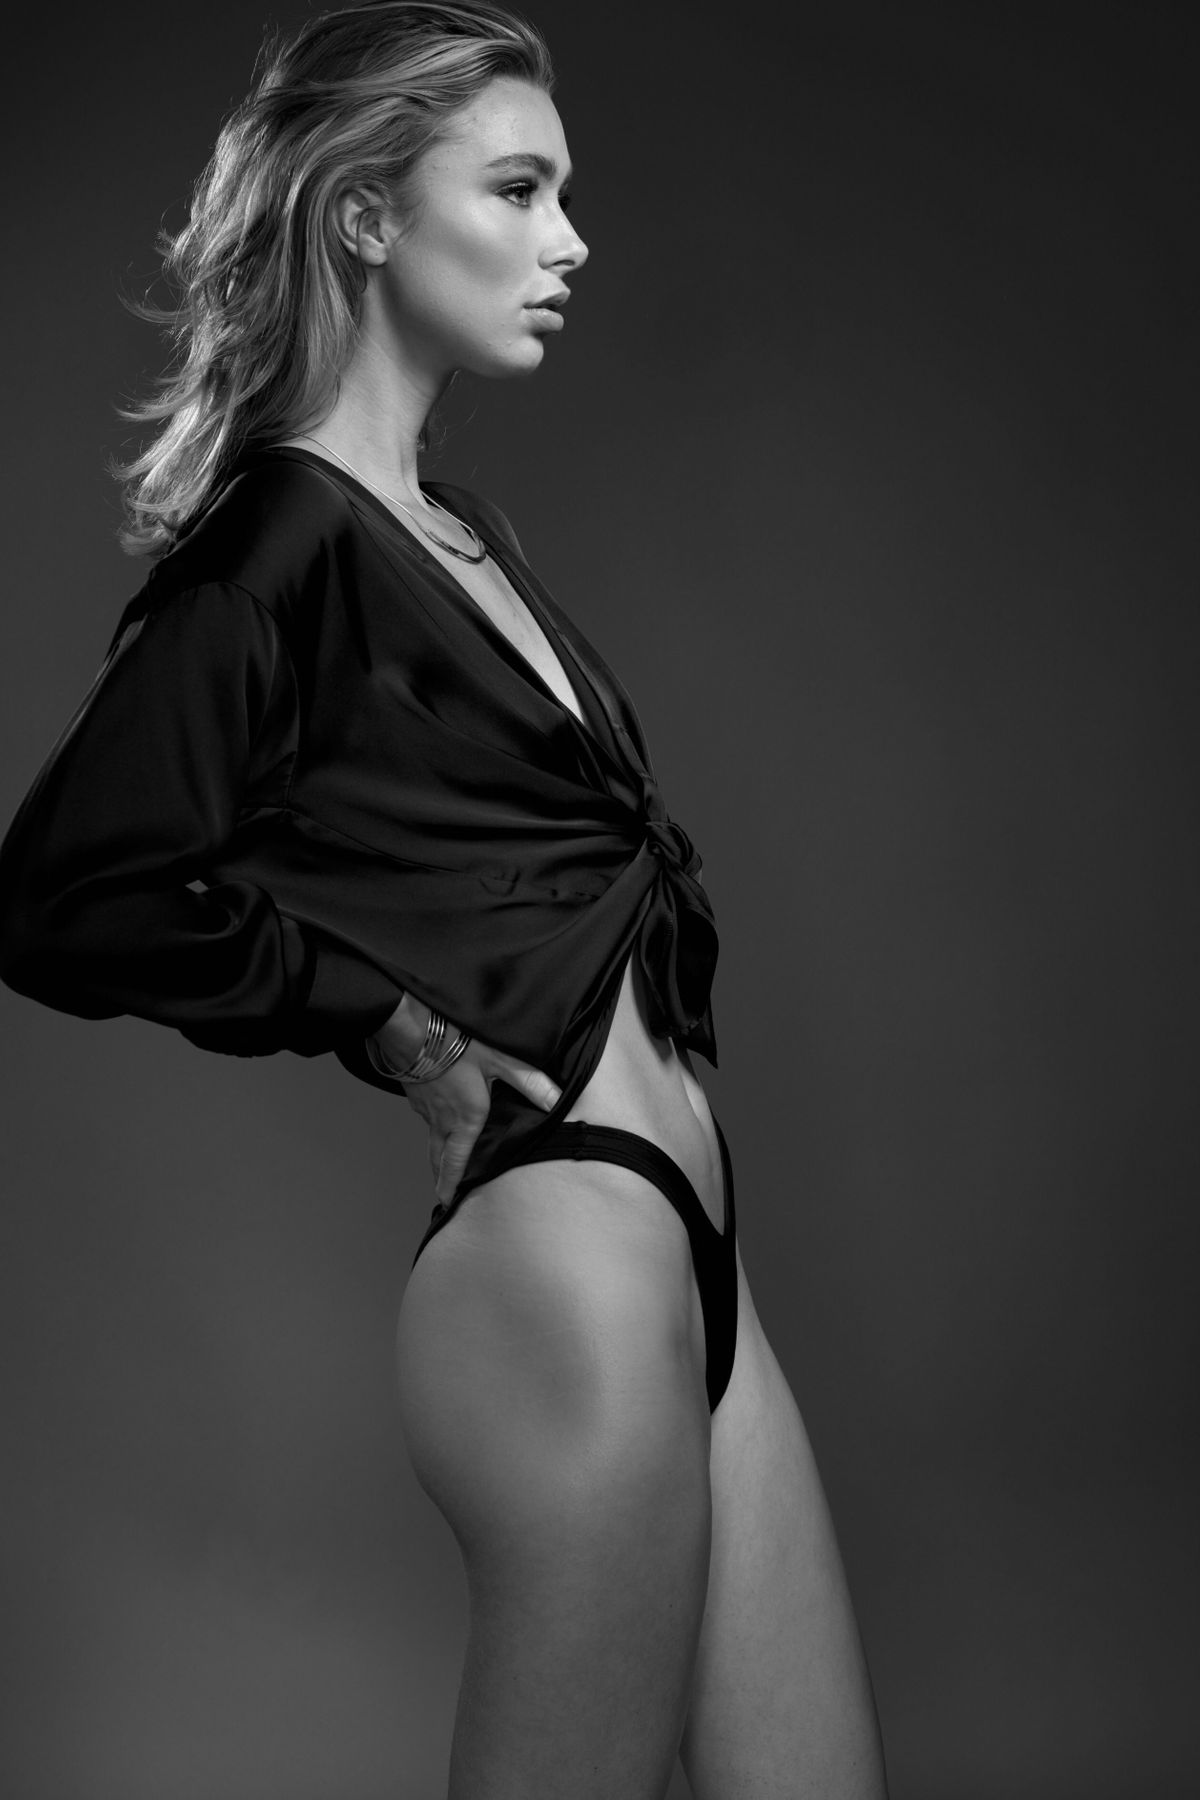 Model Samantha Visscher